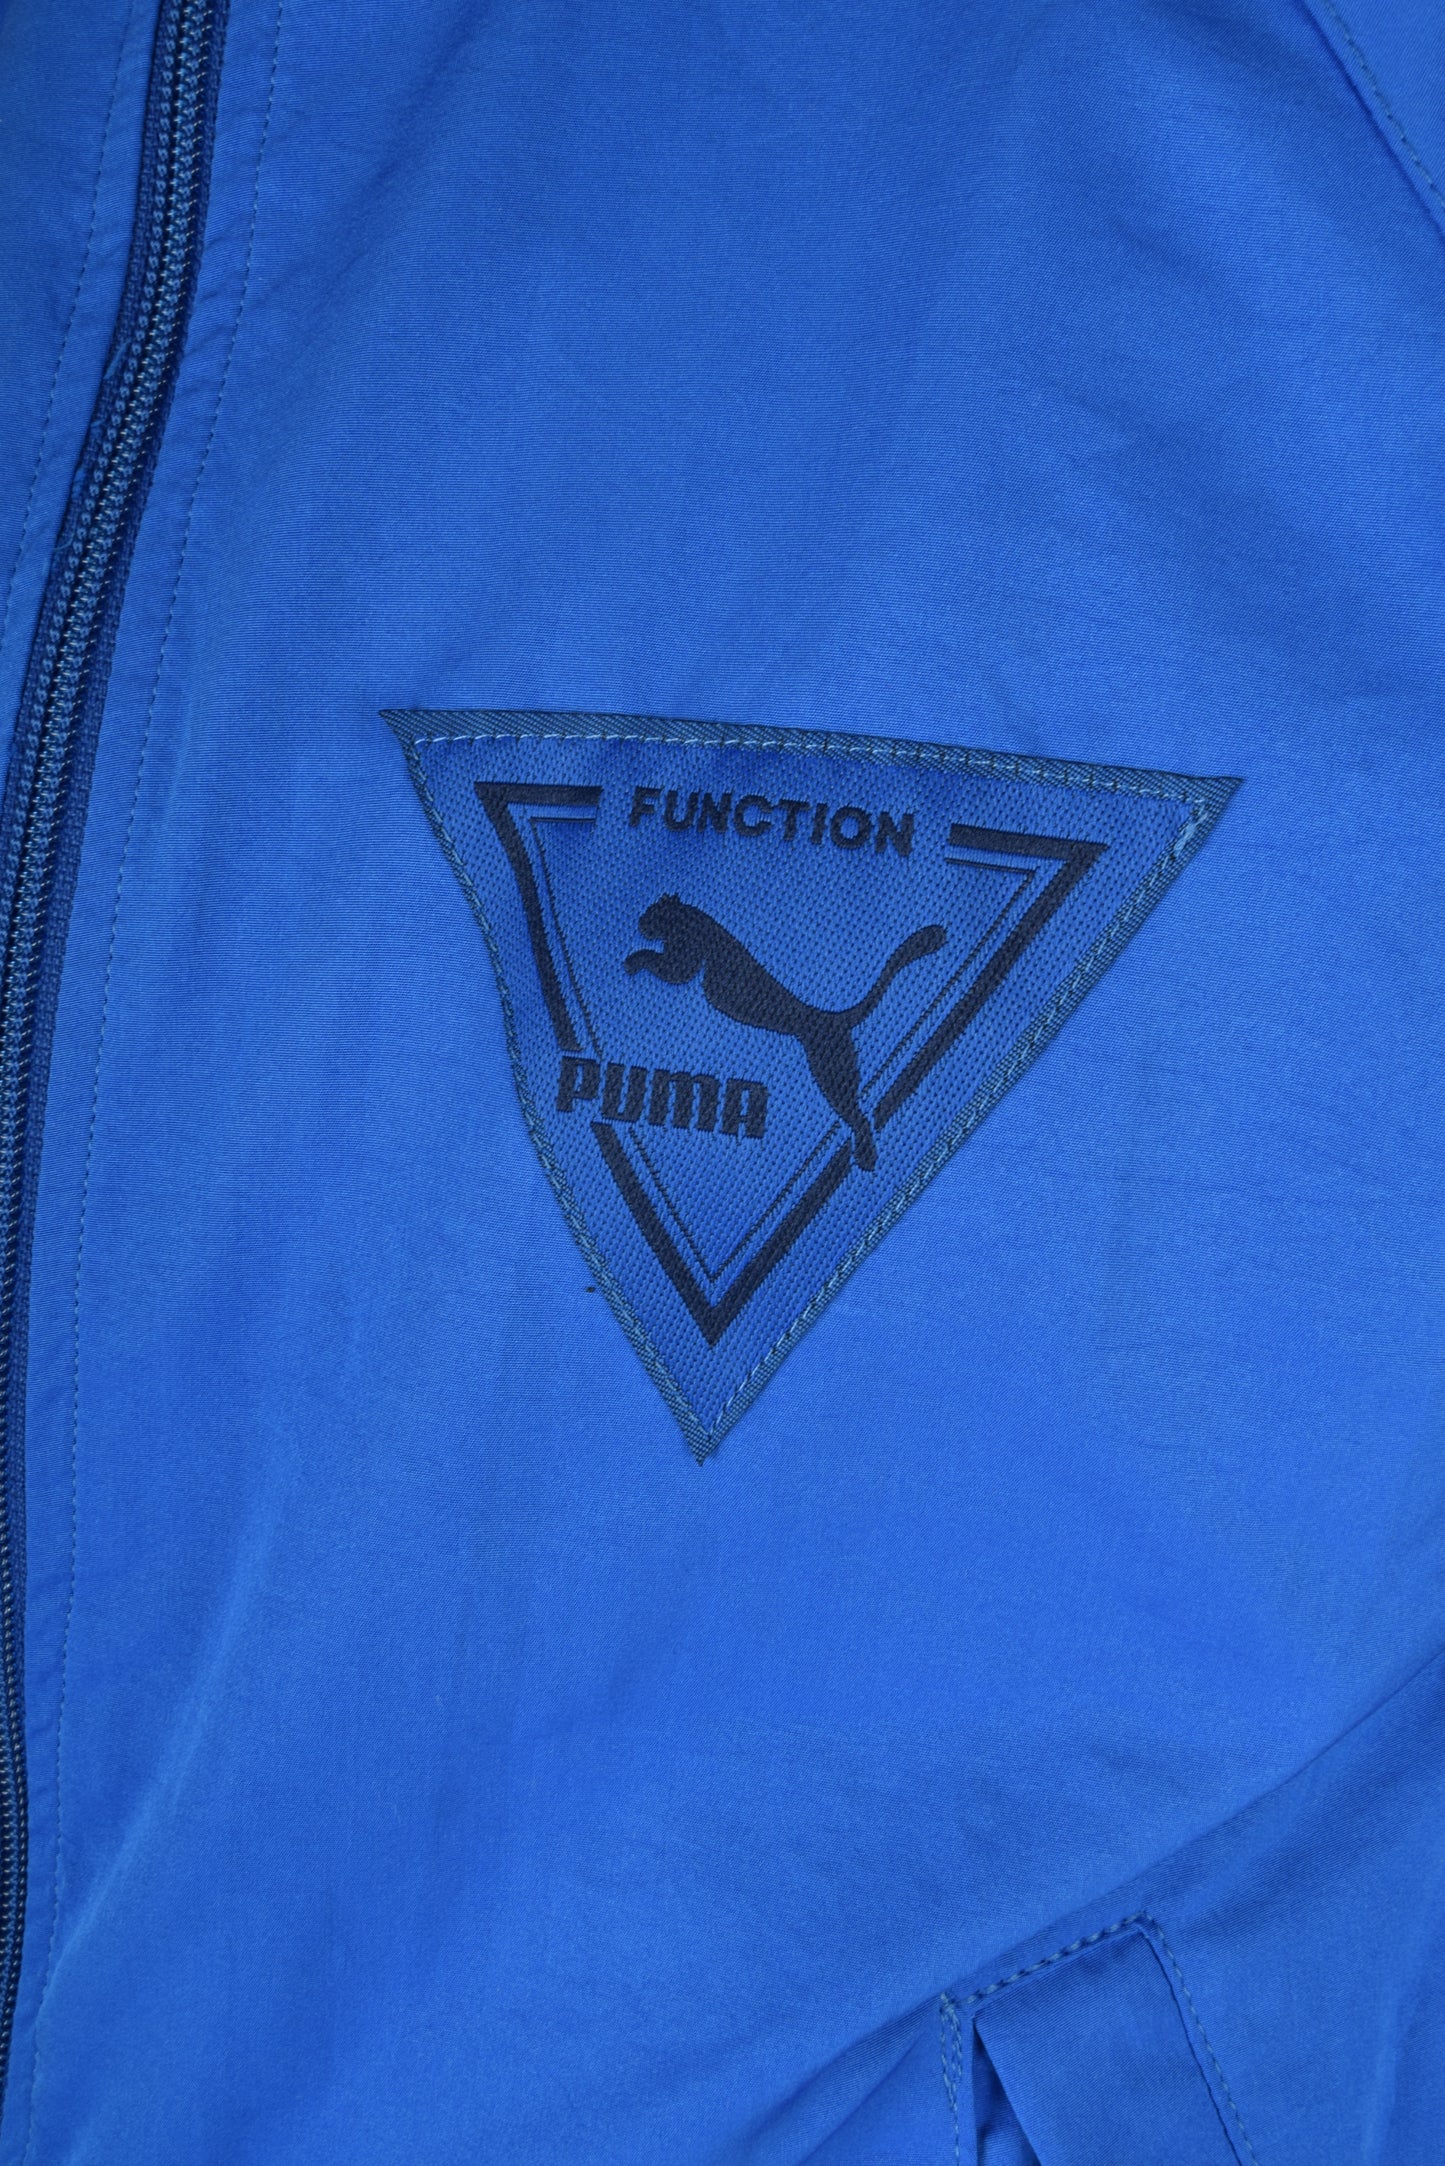 Vintage Puma Jacket 90's 